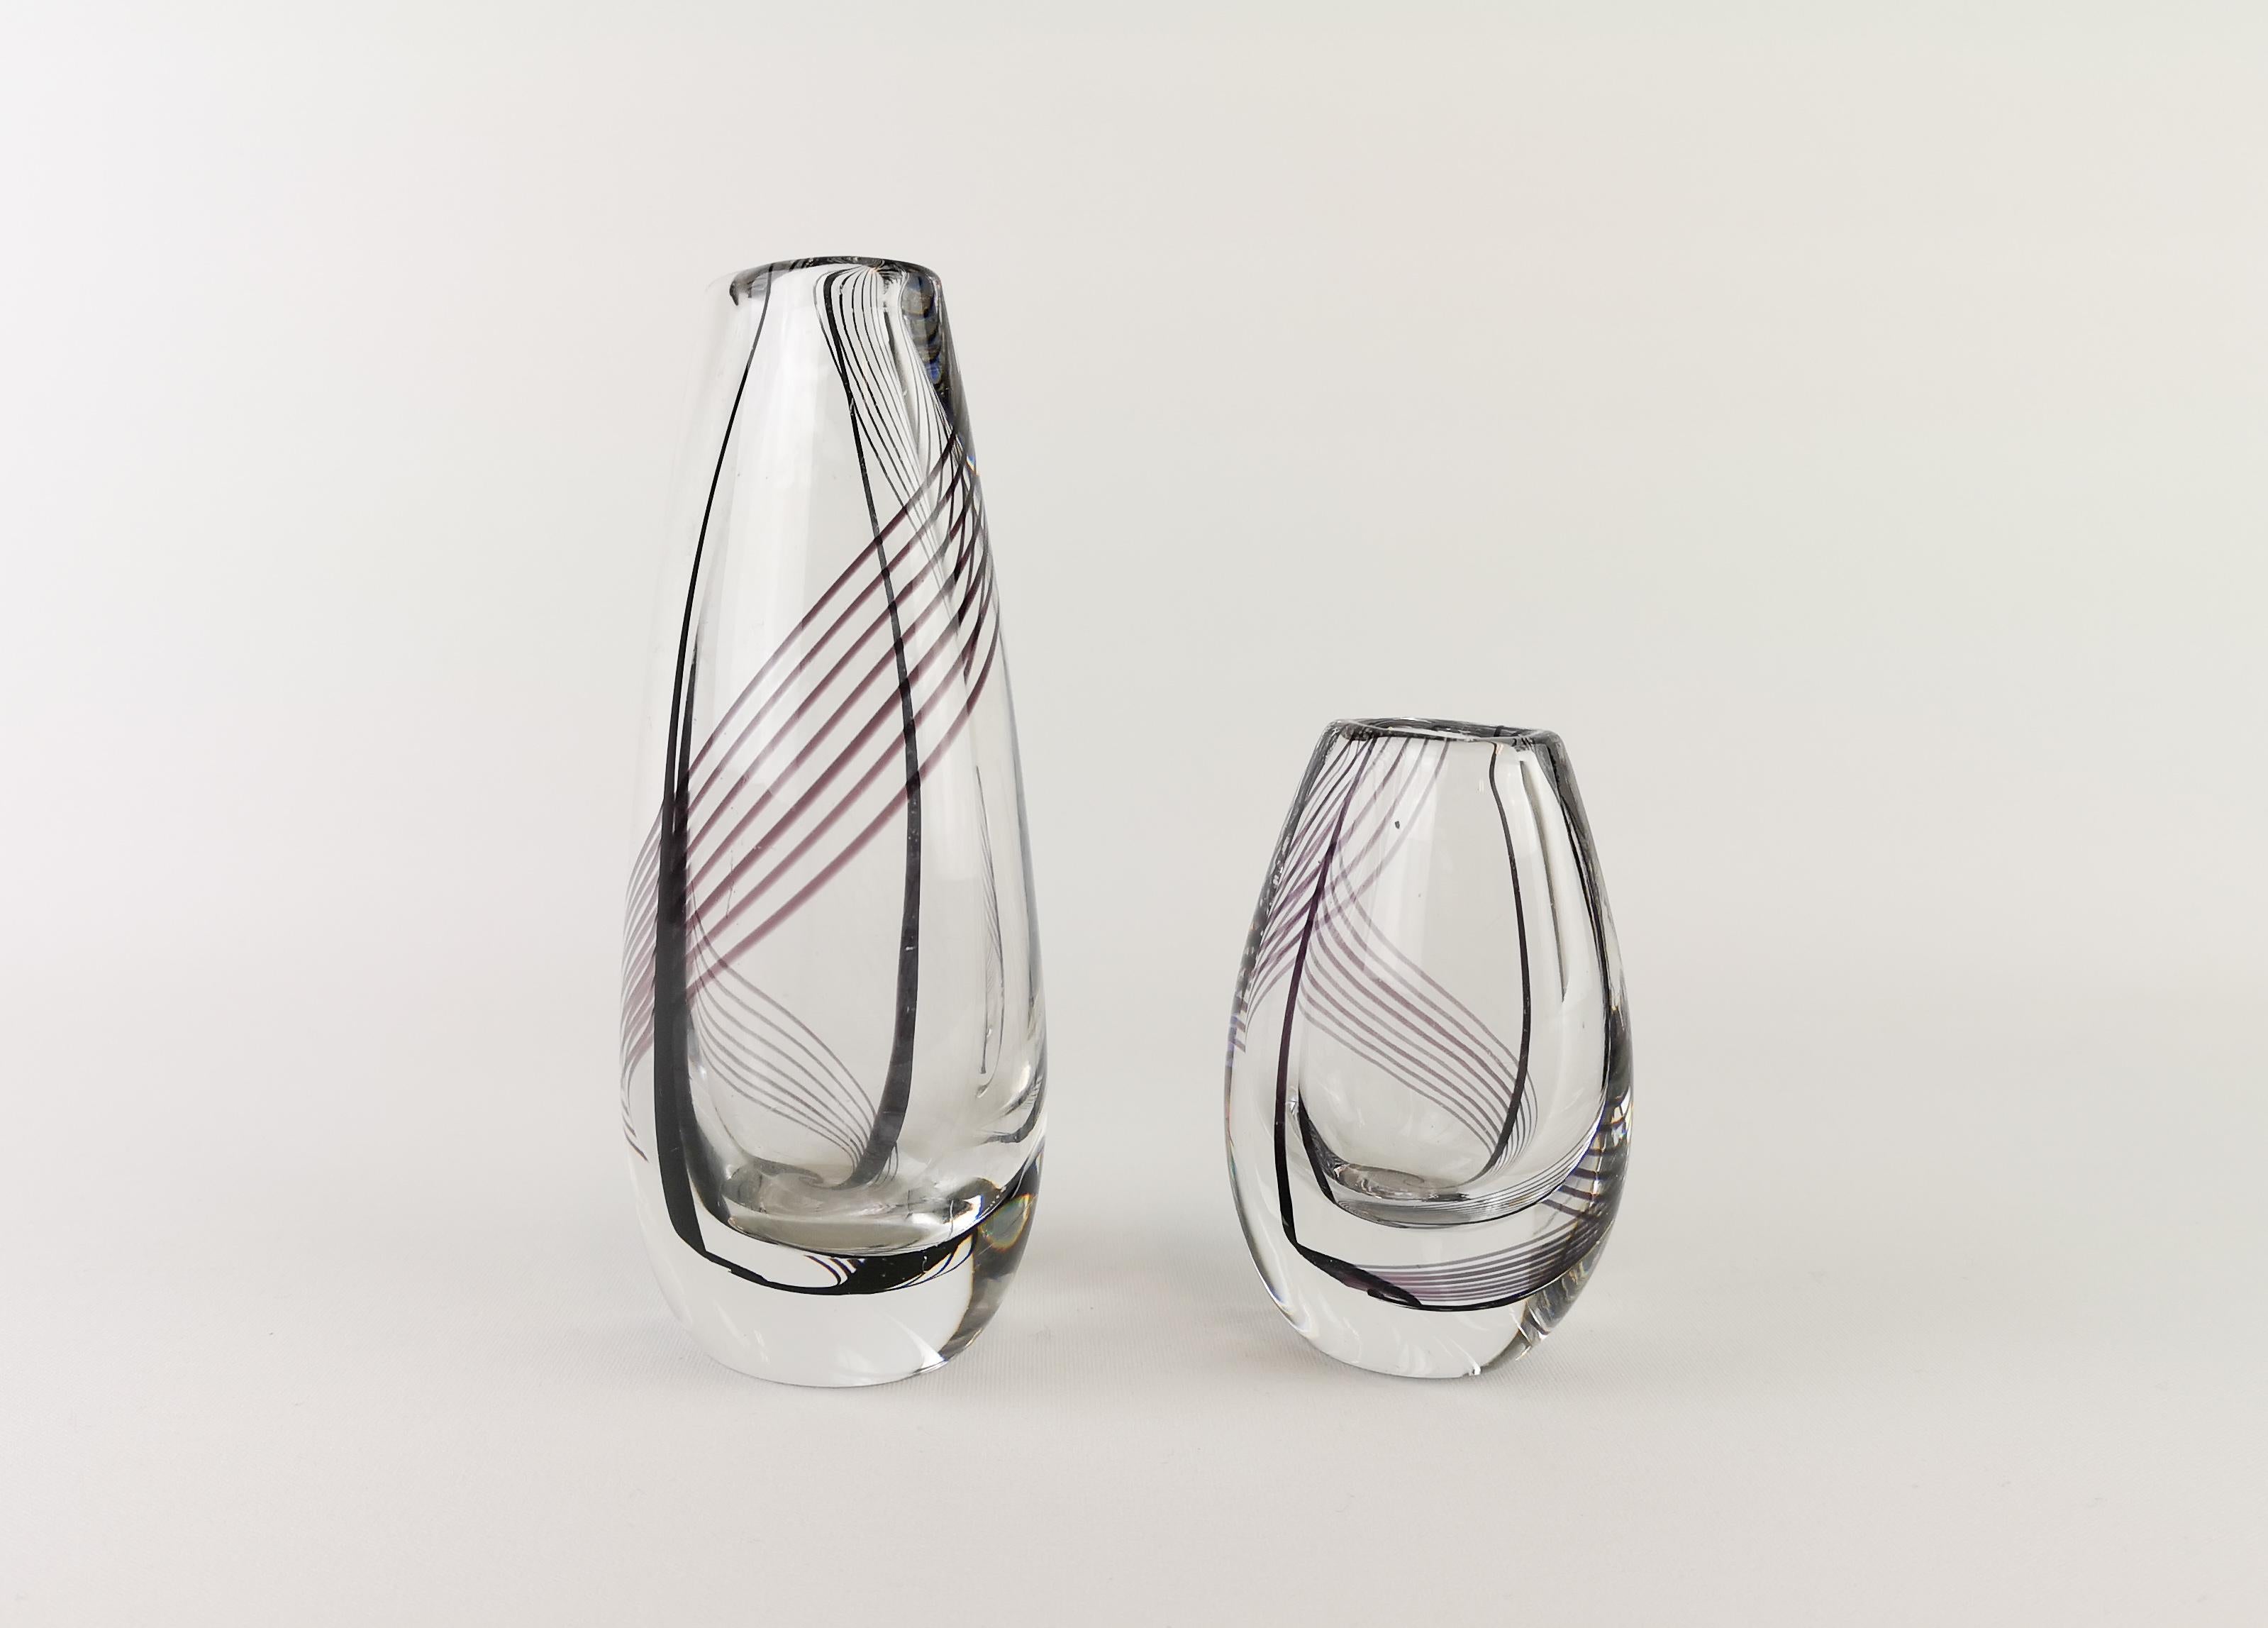 Außergewöhnliche Vasen aus schwerem, dickem Kunstglas, hergestellt von Kosta Boda, Schweden, 1959. Diese Vasen wurden von Vicke Lindstrand entworfen und signiert. Die Vasen sind aus klarem Glas mit einem schönen Muster aus schwarzen und lila